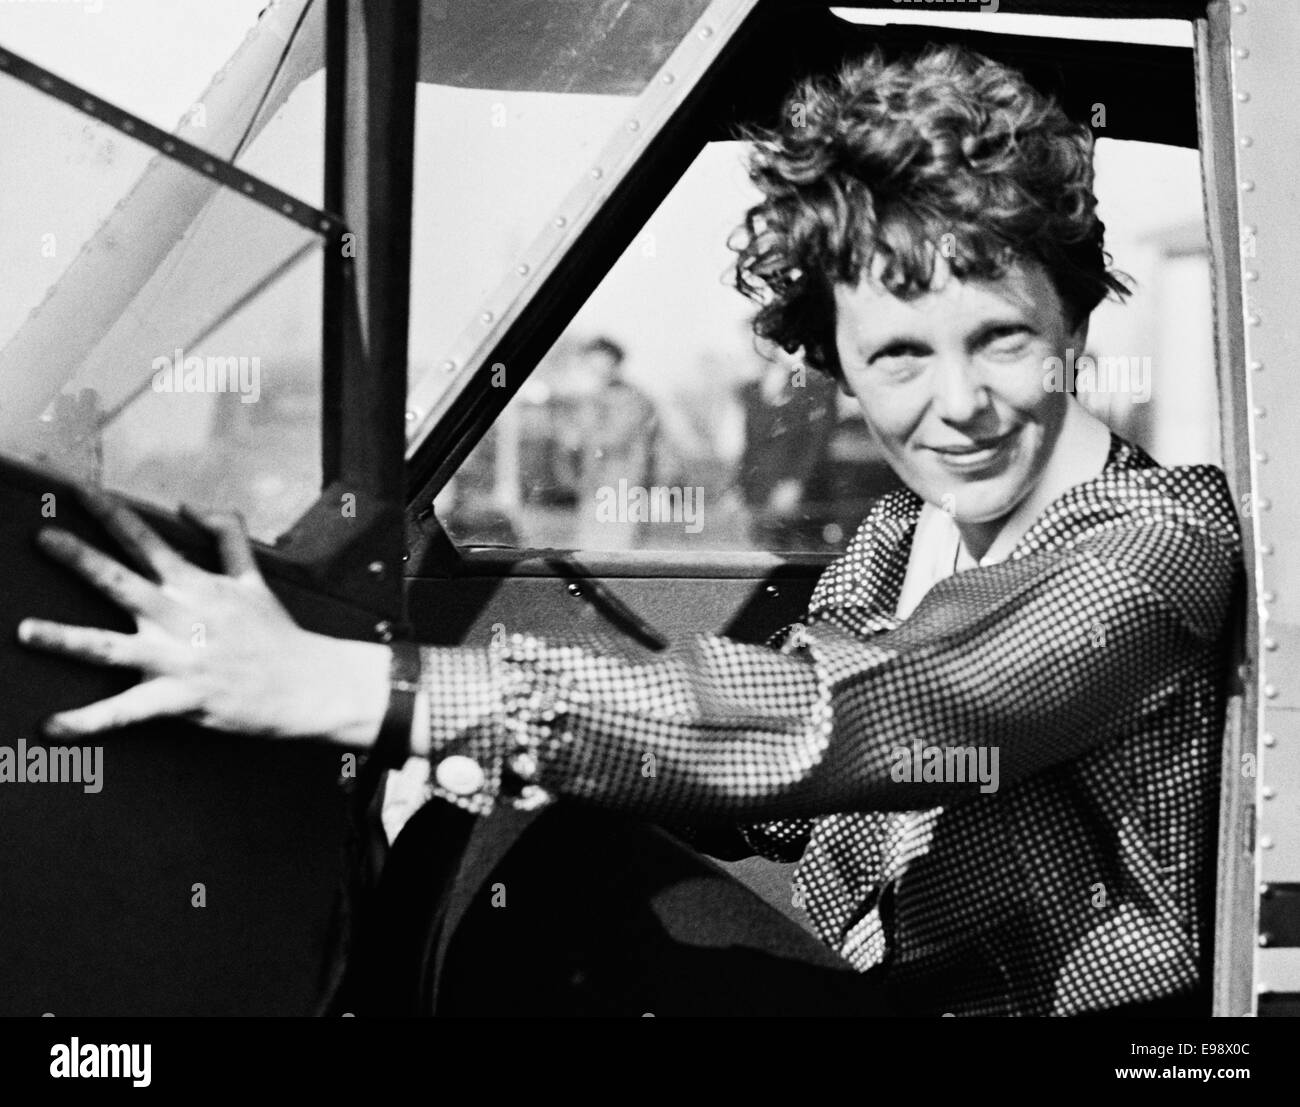 Photo d'époque de la pionnière et auteure de l'aviation américaine Amelia Earhart (1897 – déclarée morte en 1939) – Earhart et son navigateur Fred Noonan ont connu une célèbre disparition en 1937 alors qu'elle essayait de devenir la première femme à effectuer un vol de navigation du globe. Earhart est photographié en 1936, assis dans le poste de pilotage d'un avion du département américain du Commerce. Banque D'Images